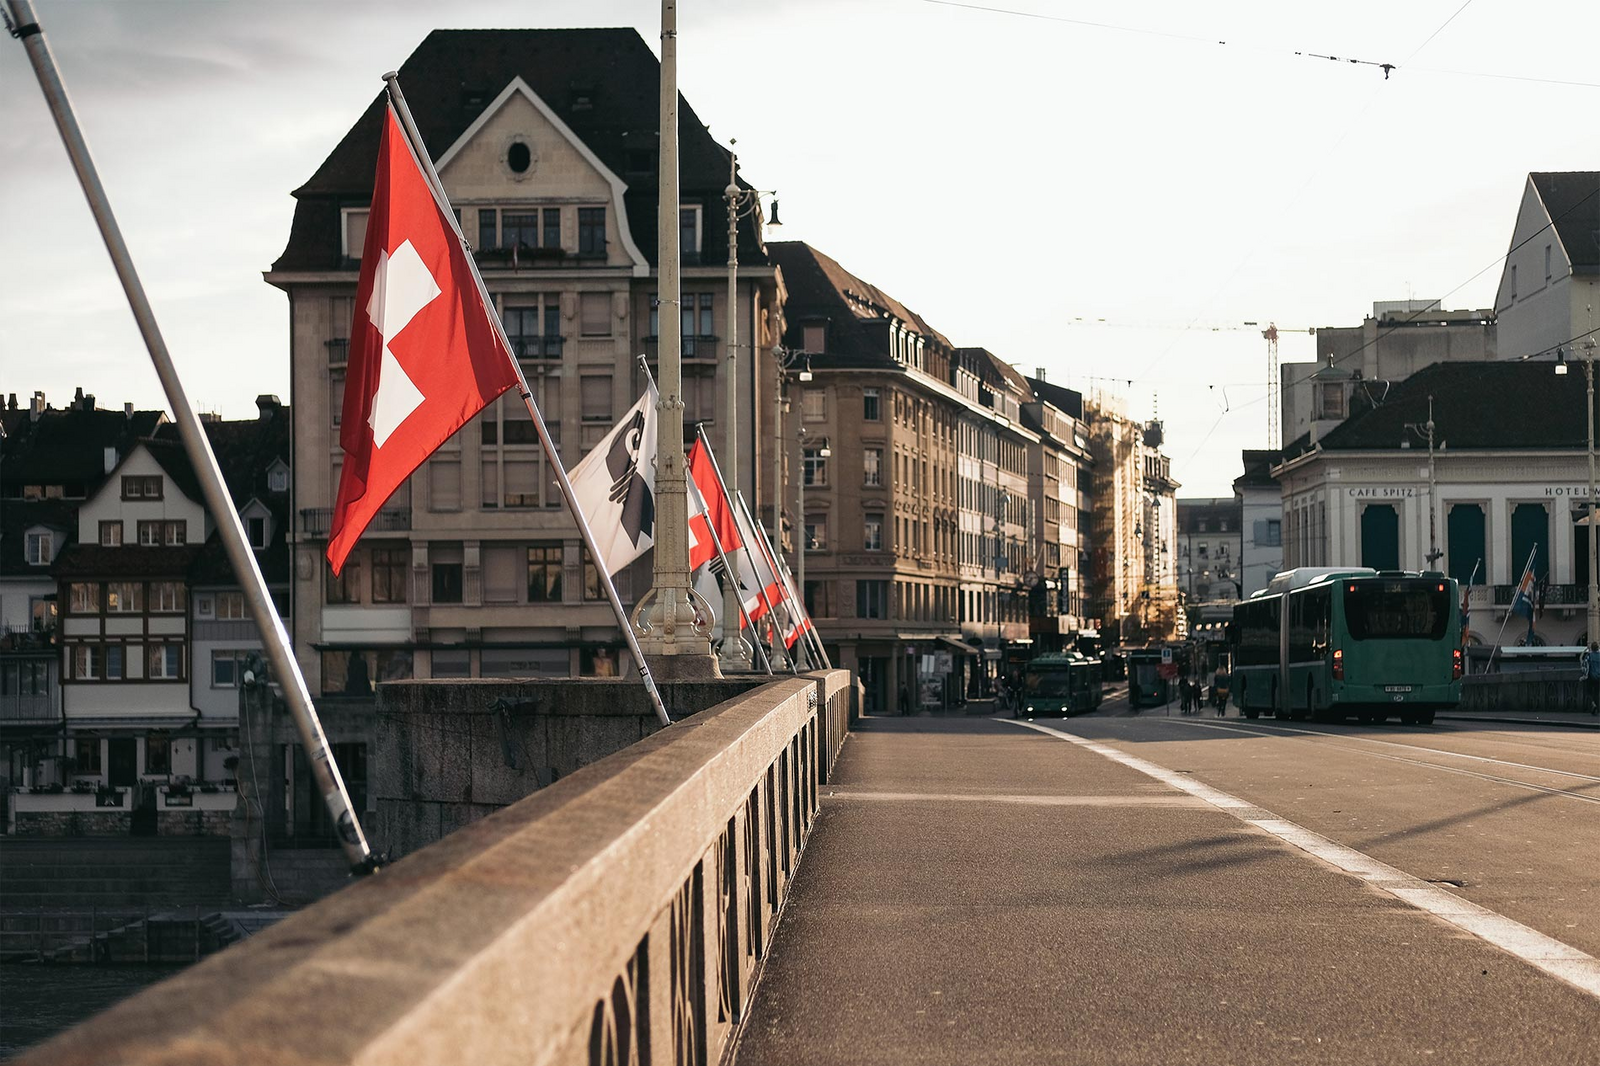 Des drapeaux suisses et du canton de Bâle-Ville flottent au vent depuis un pont à Bâle. En arrière-plan, un bus s'engouffre dans une rue surplombée par des immeubles anciens.